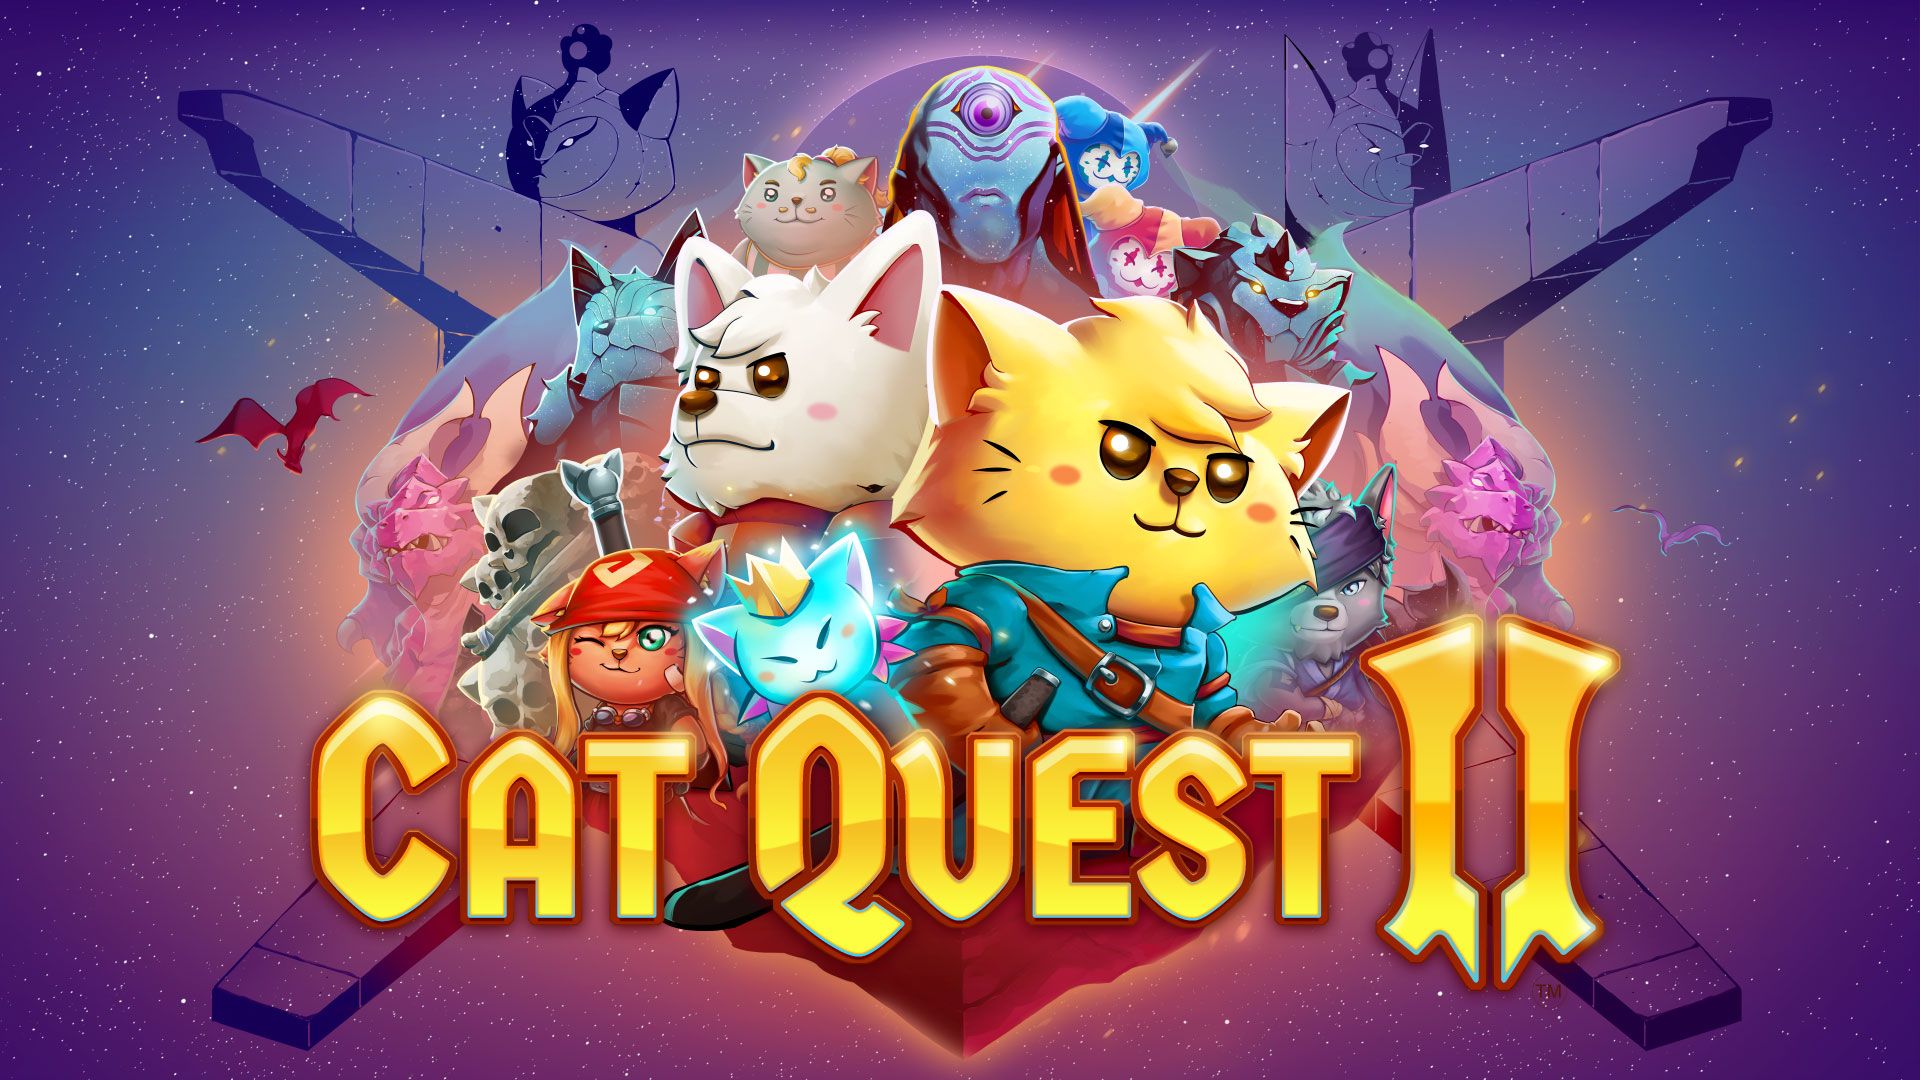 Cat Quest + Cat Quest II Pawsome Pack